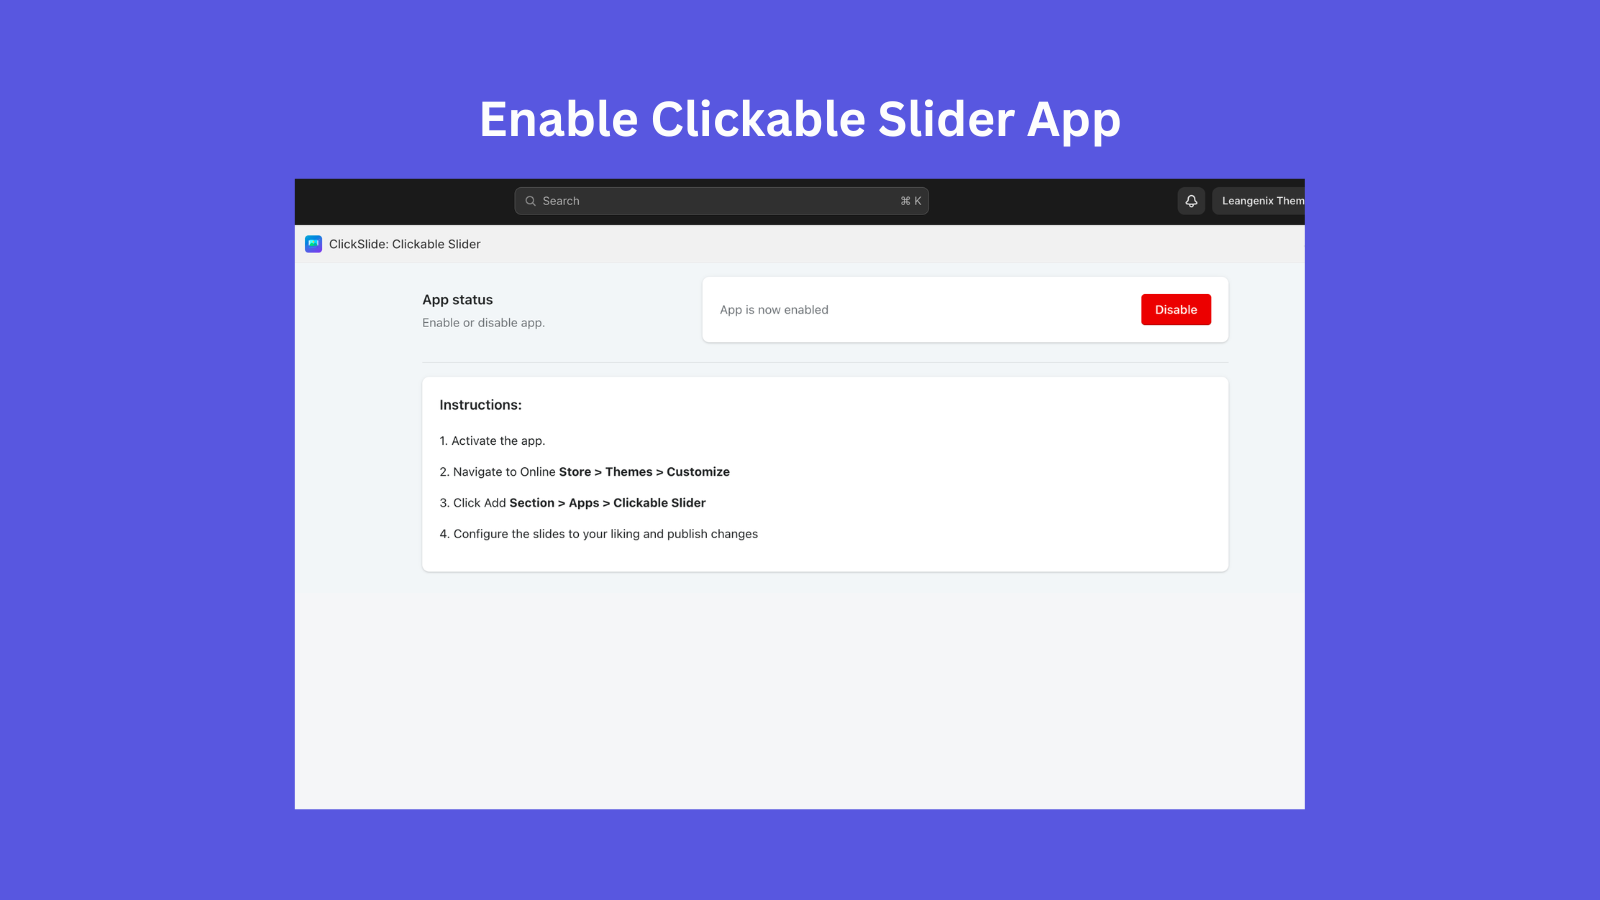 Habilite o aplicativo de slider clicável